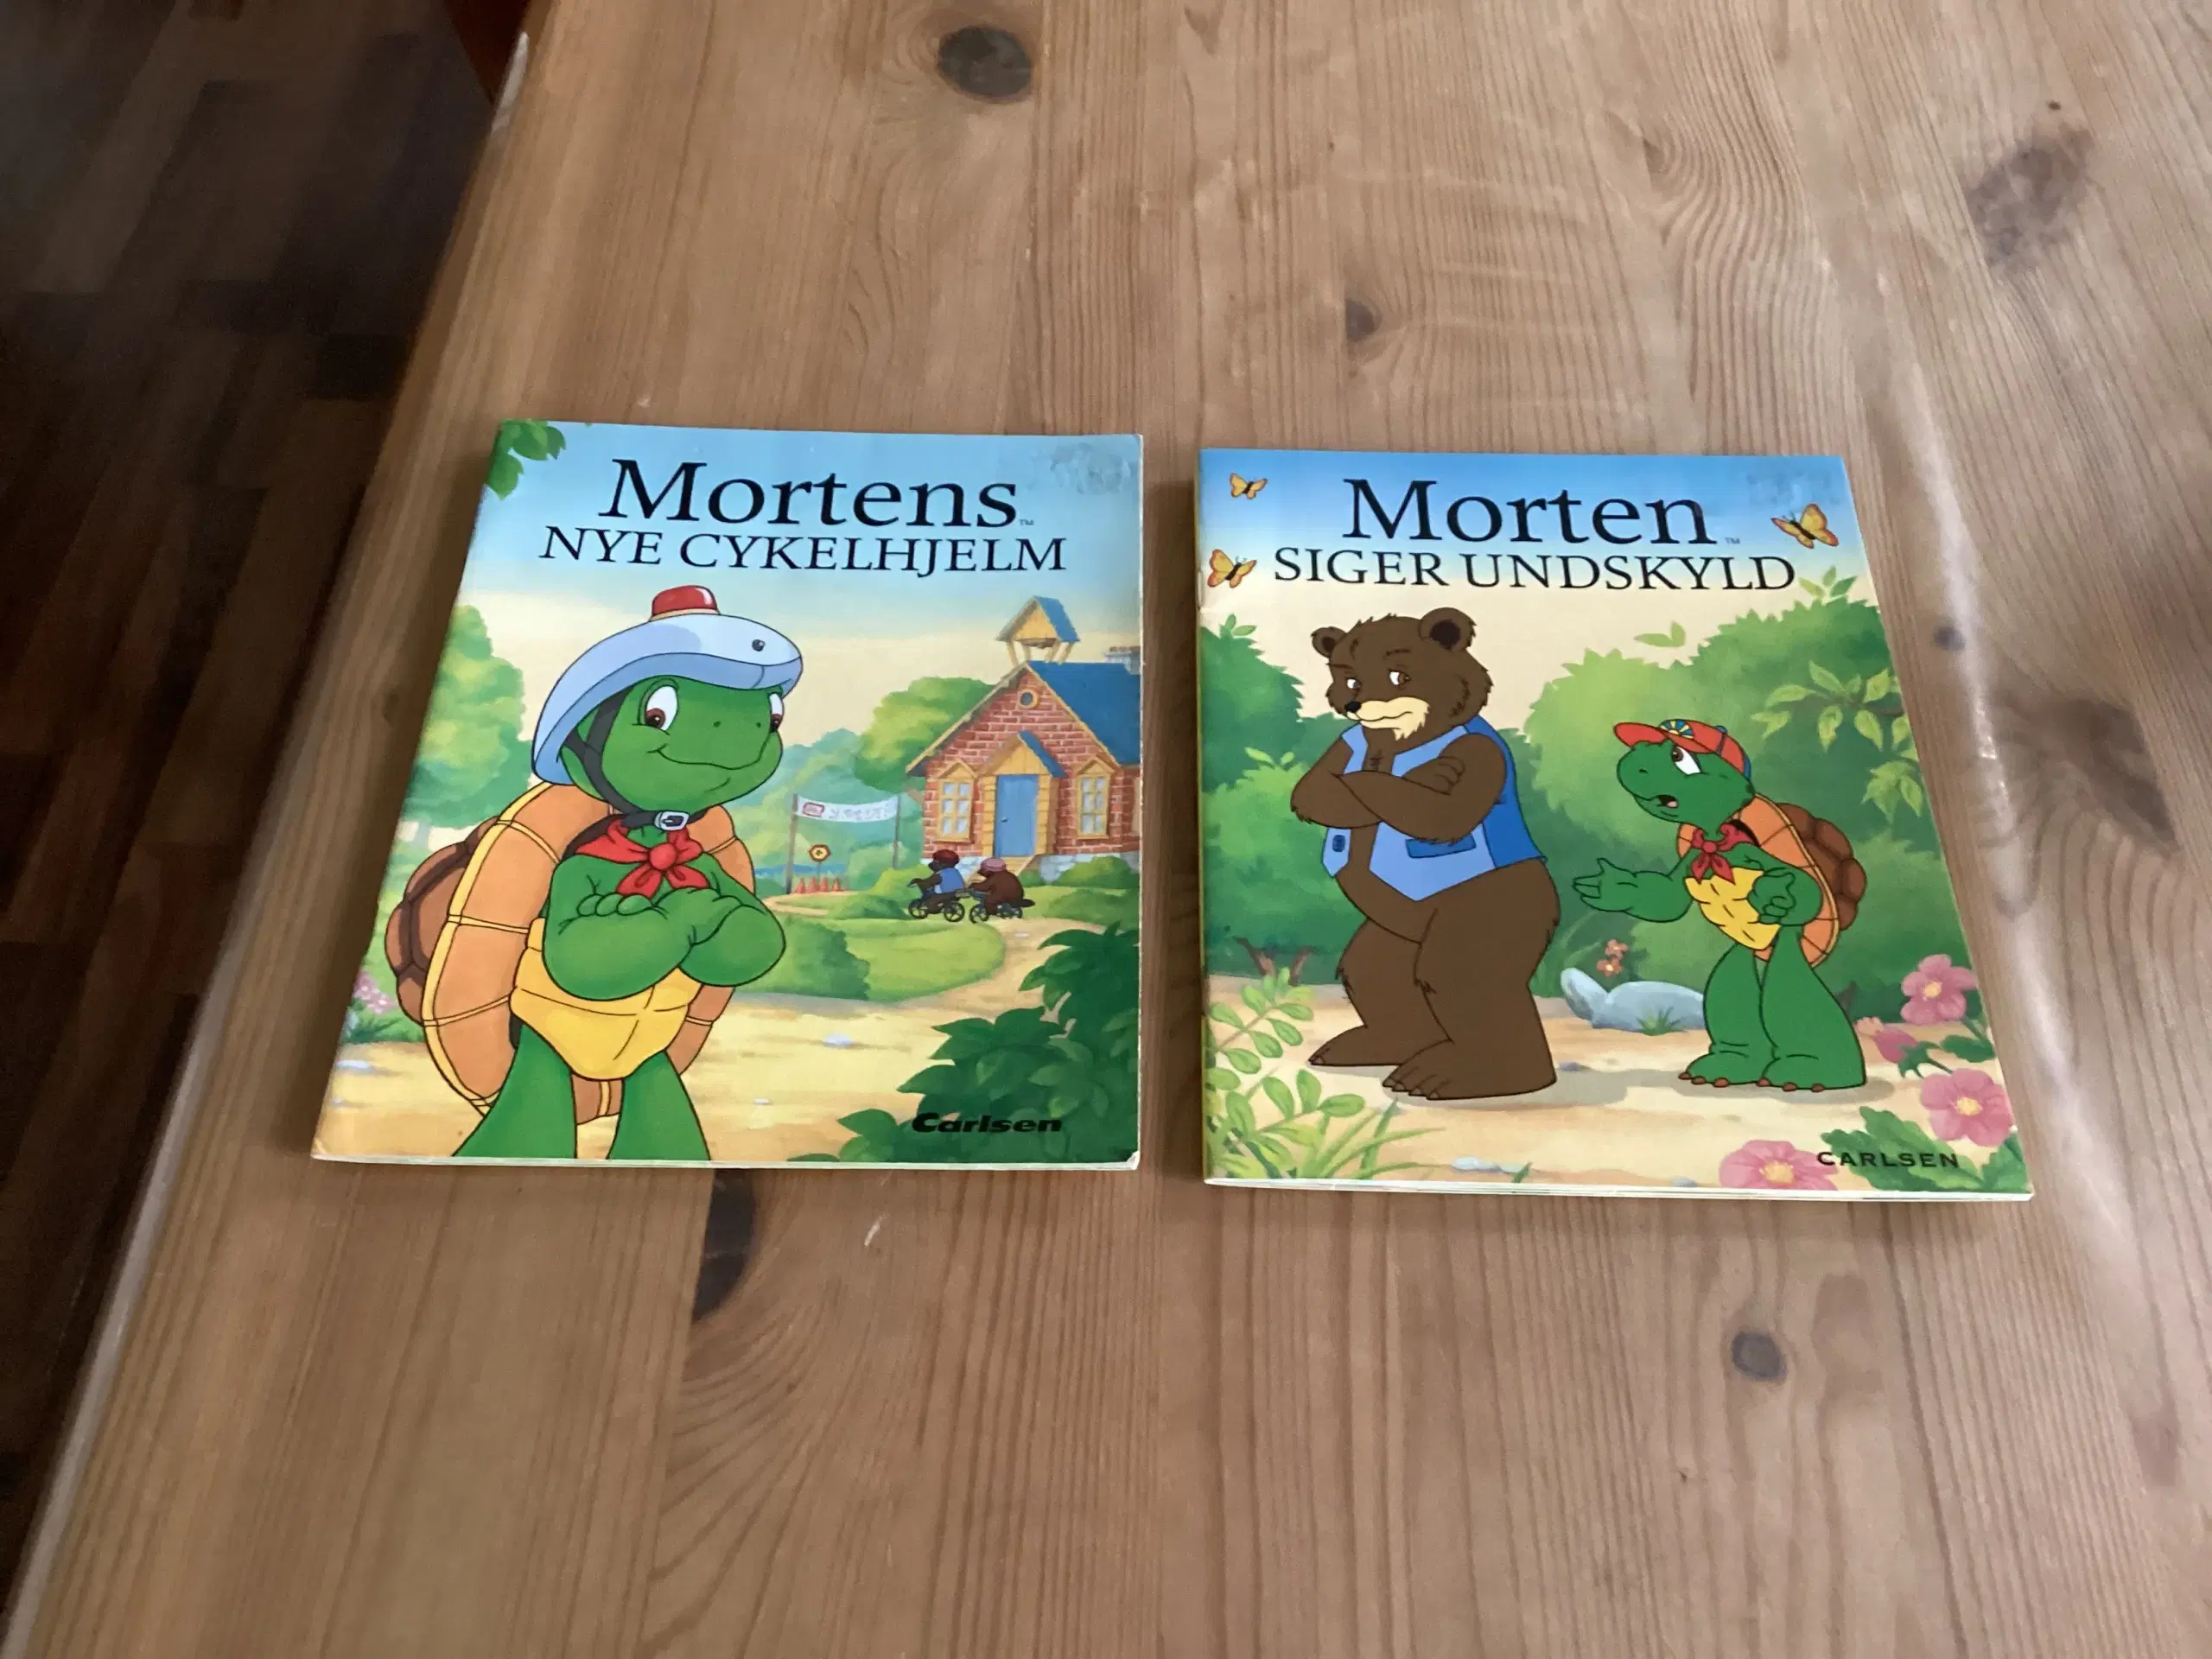 Morten Skildpadde Bøger